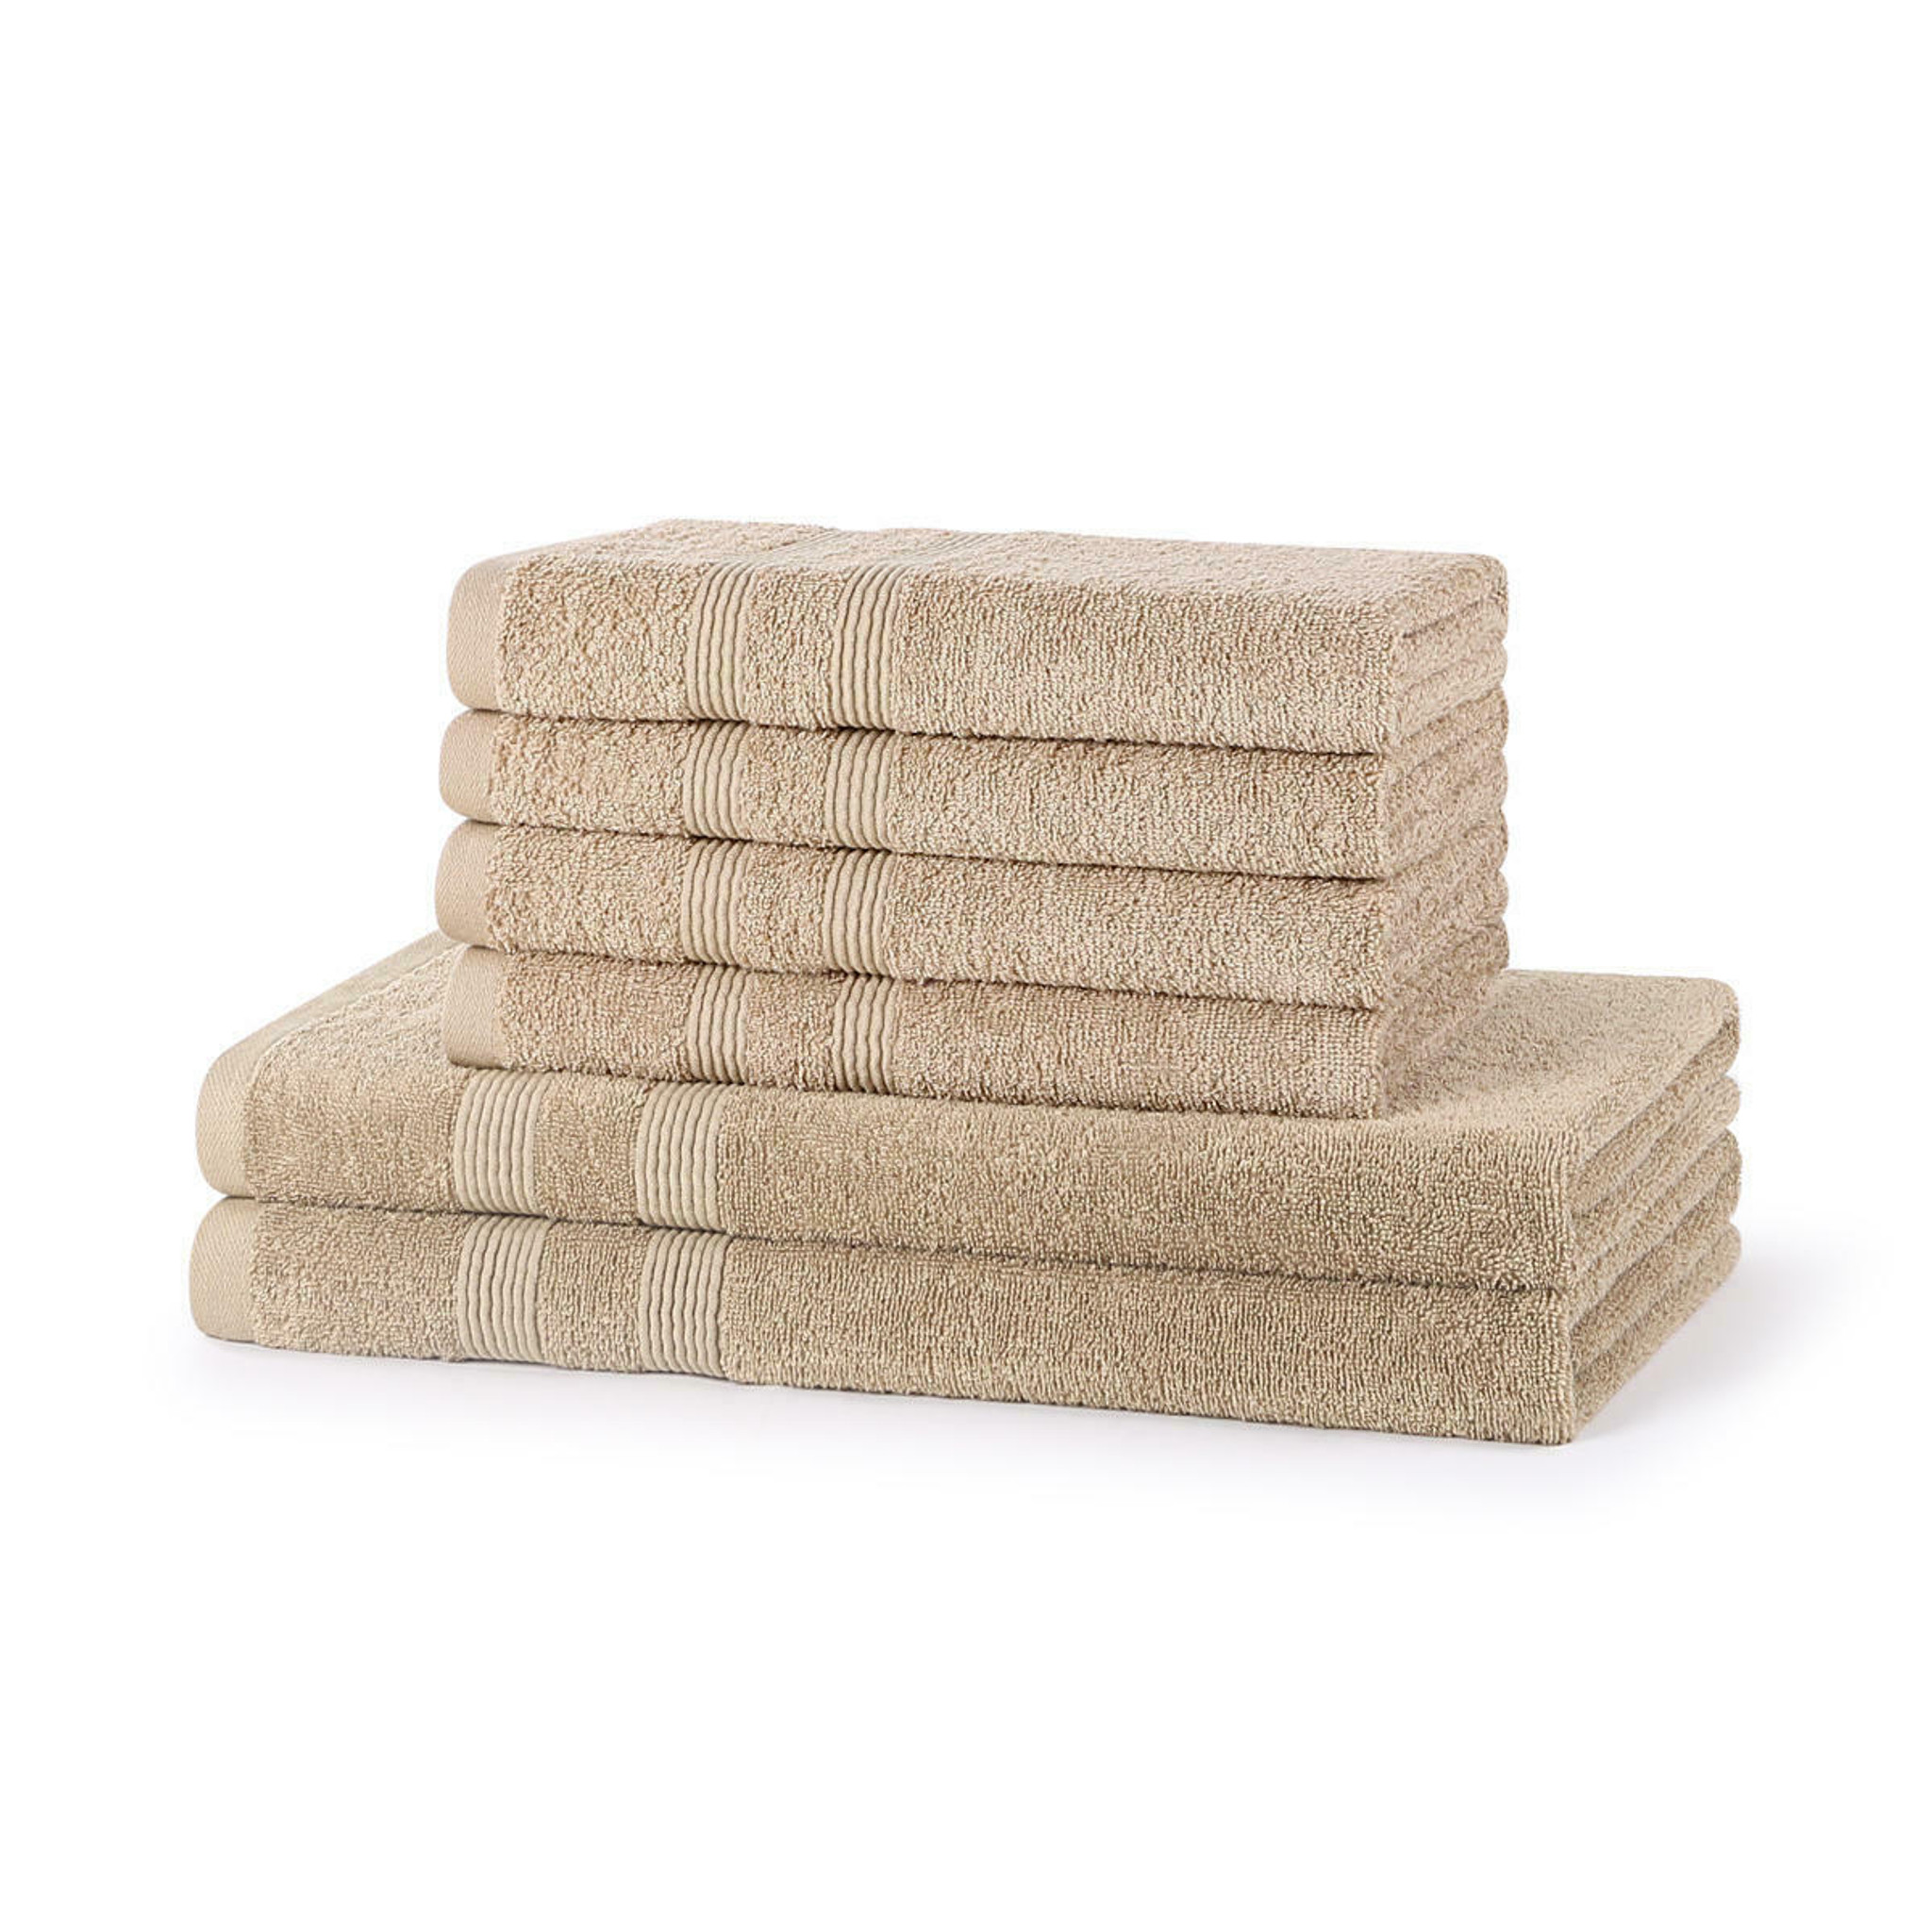 Wholesale 6 Piece 500GSM Towel Bale Set - 4 Hand Towels, 2 Bath Towels